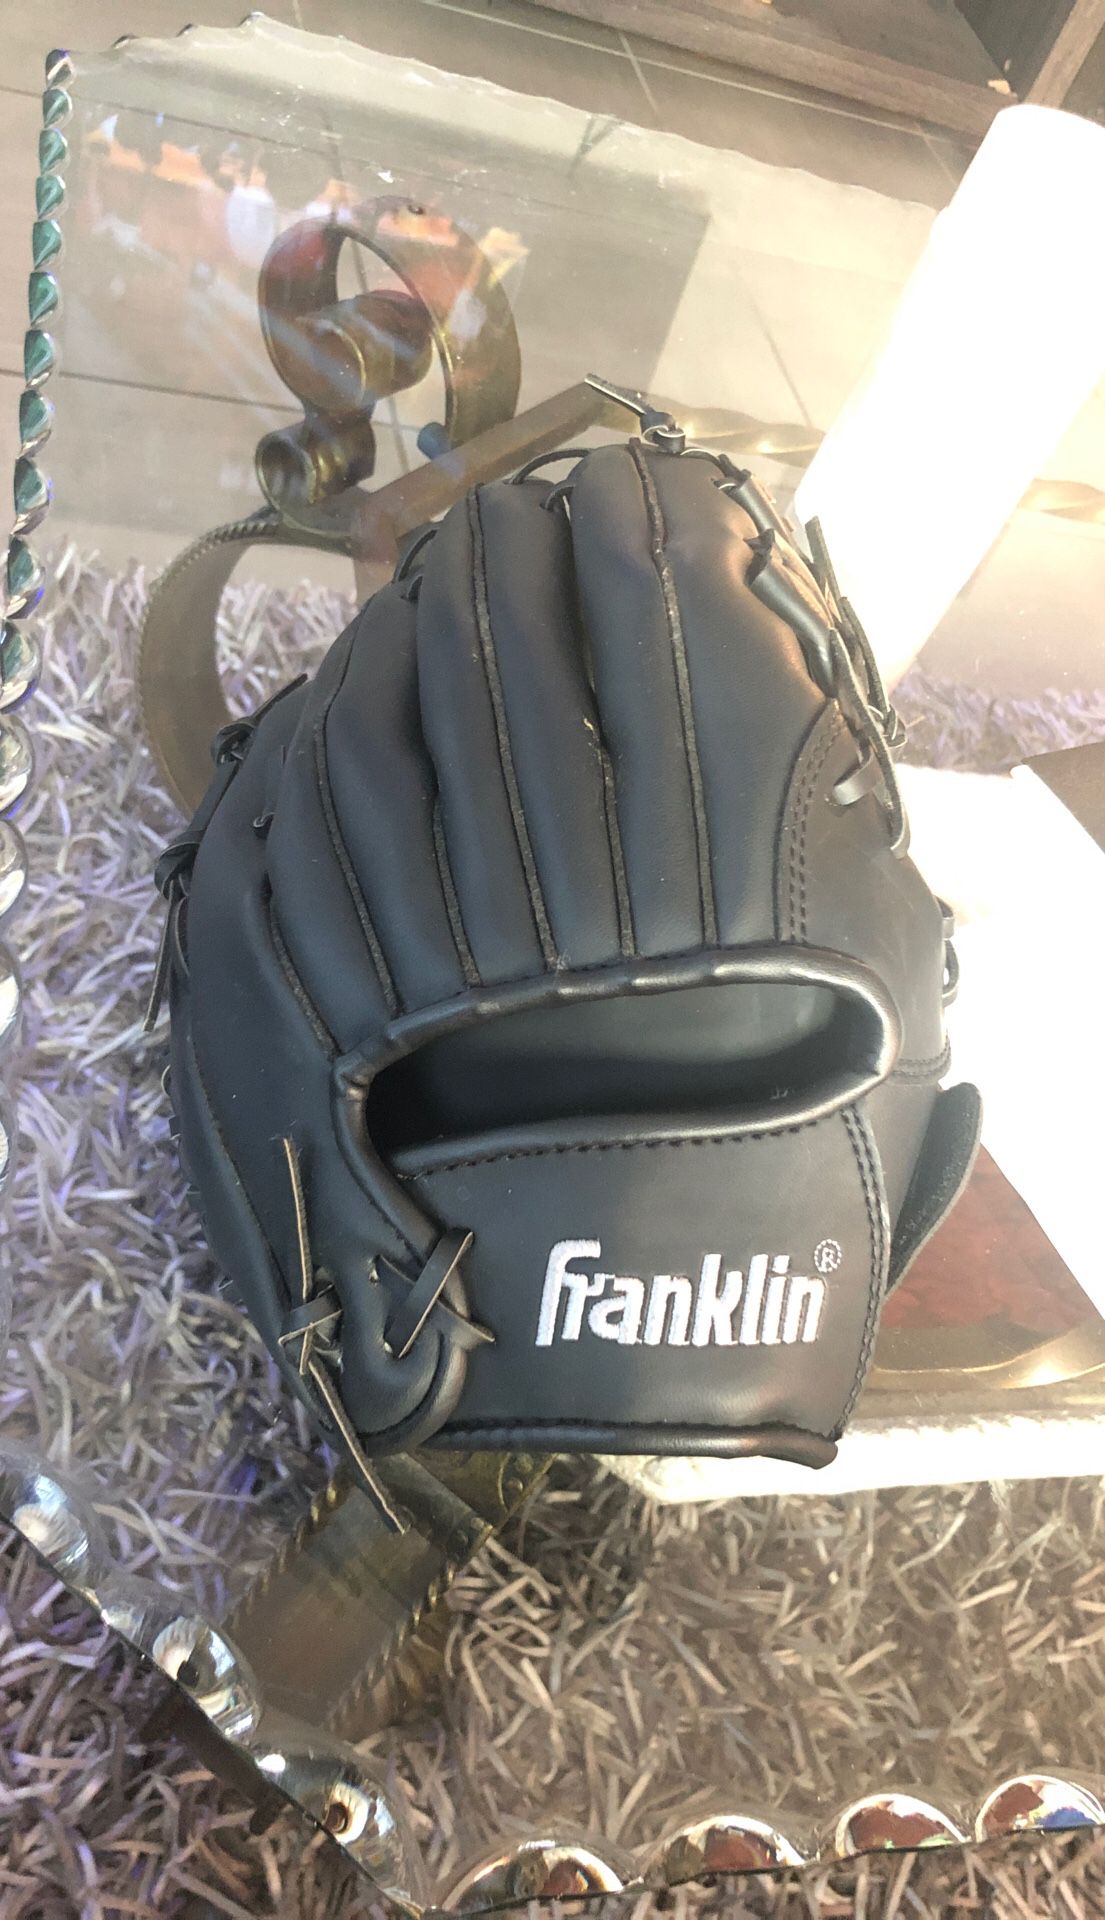 Baseball glove size 11” inches